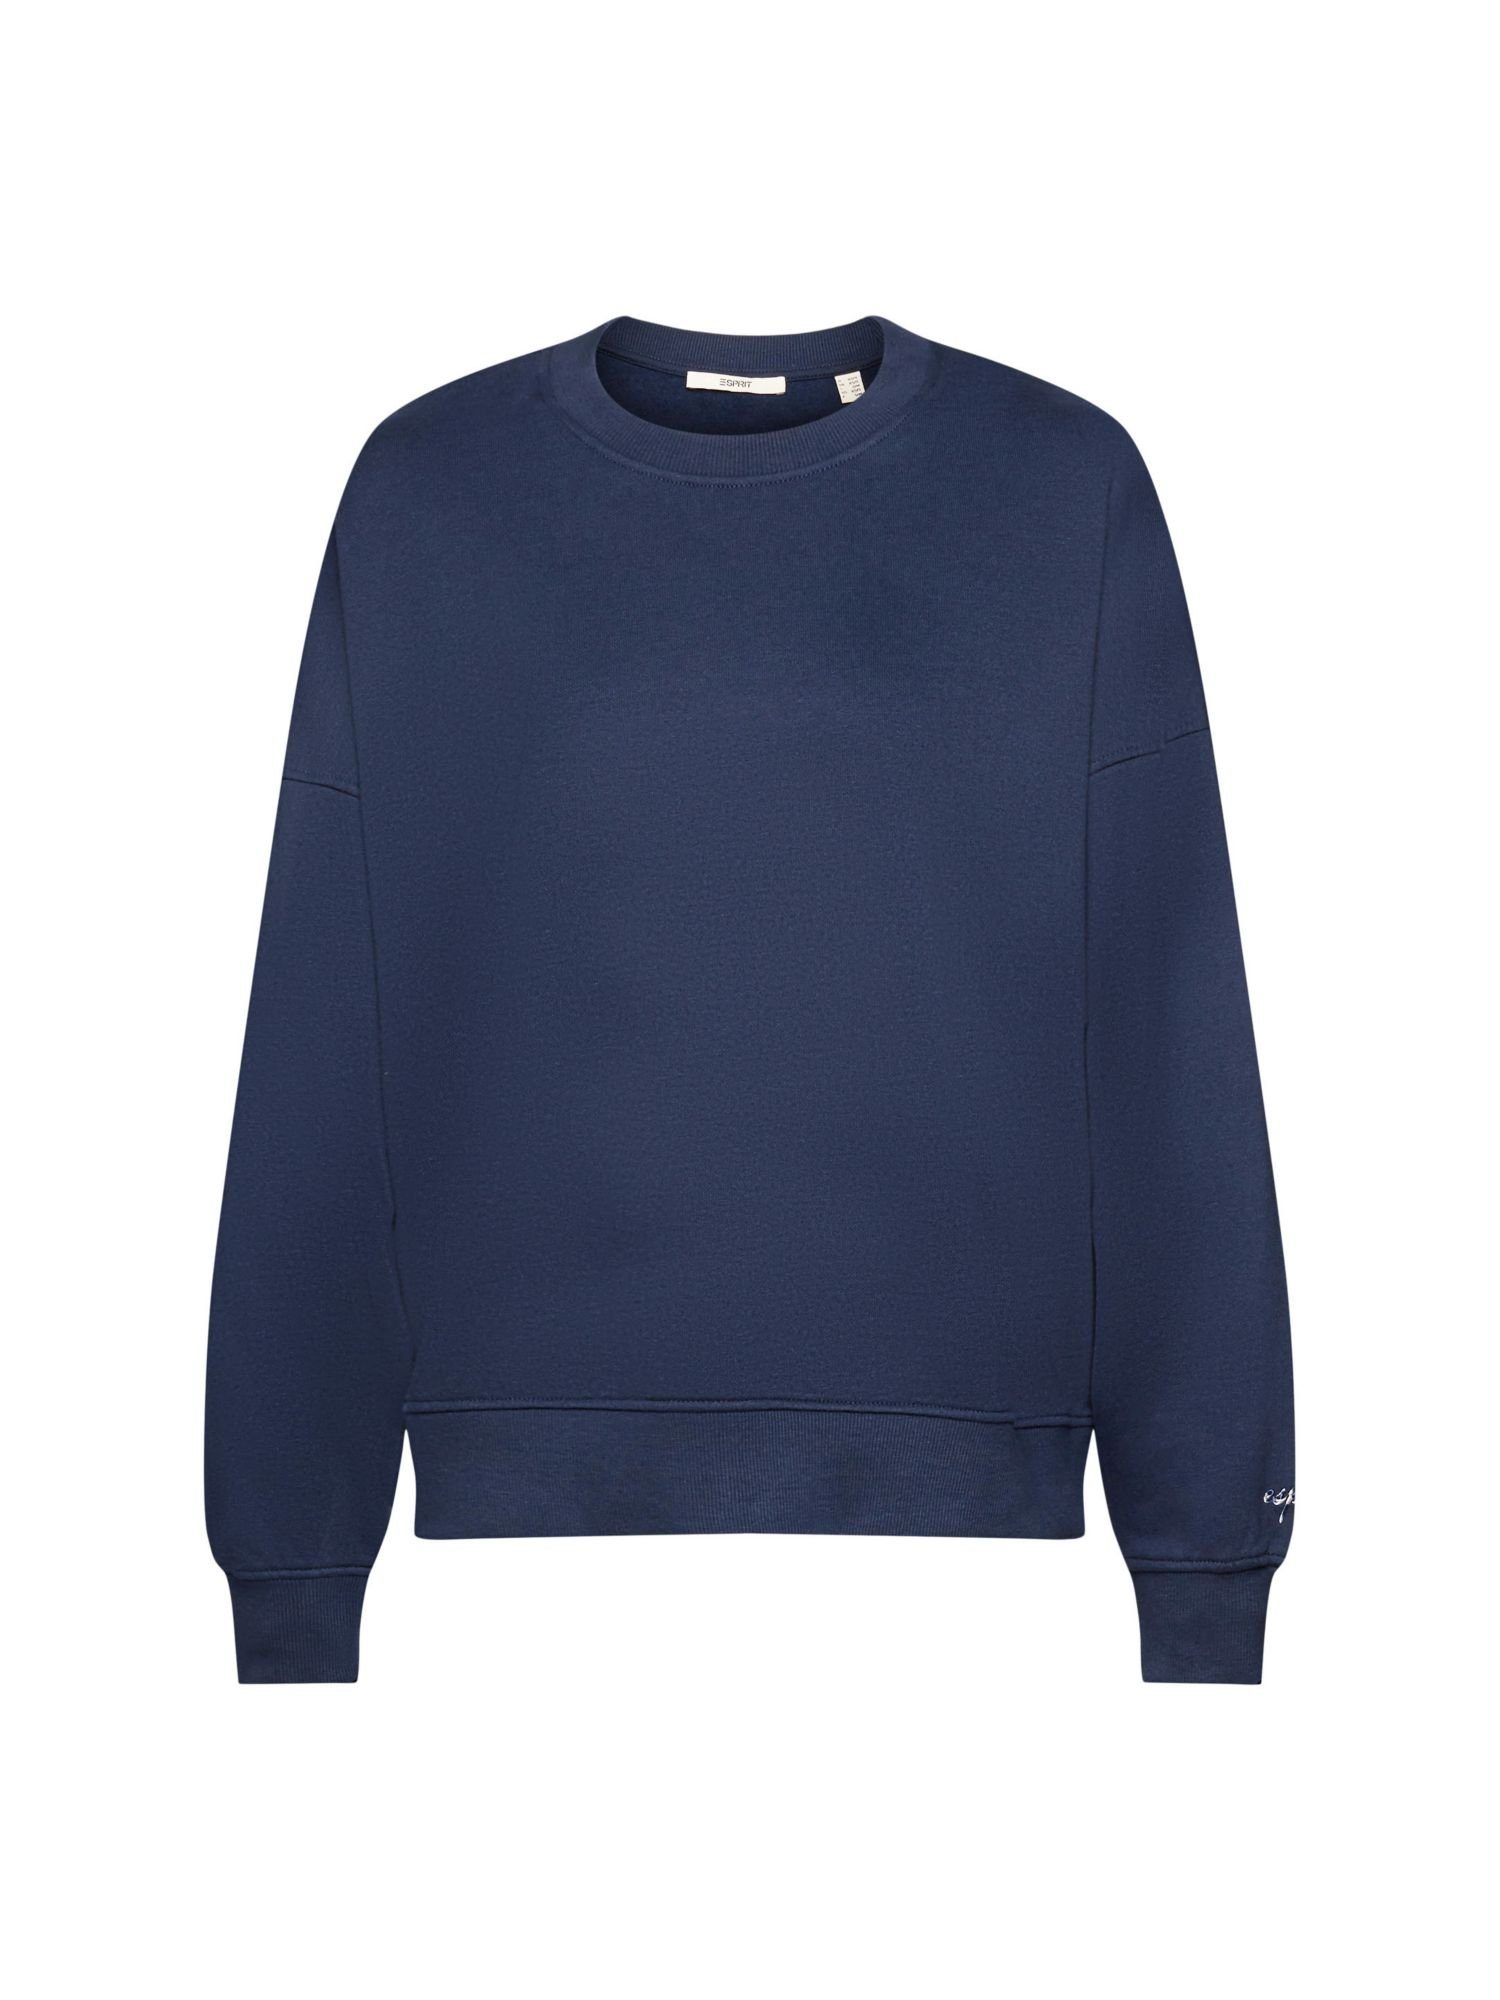 Esprit Damen Sweatshirts online kaufen | OTTO